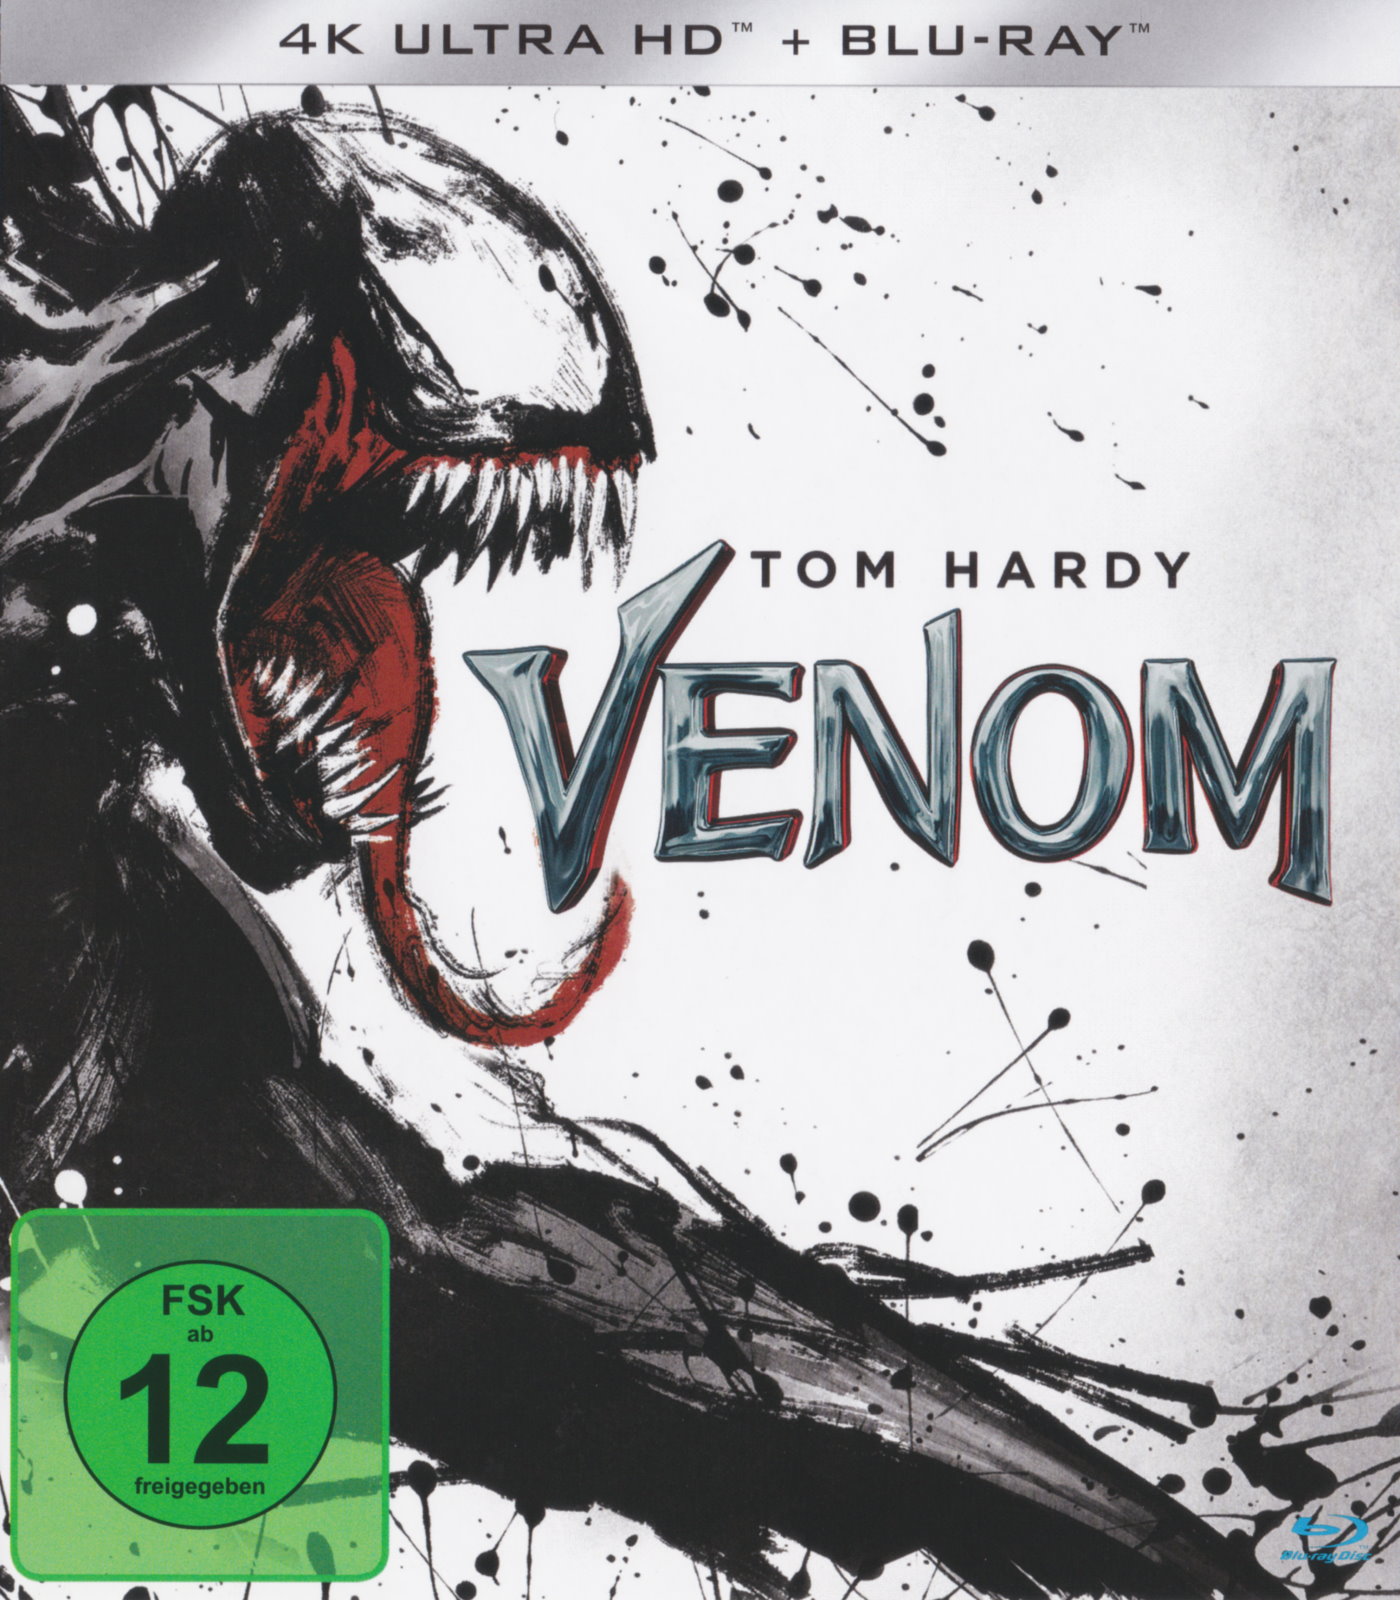 Cover - Venom.jpg